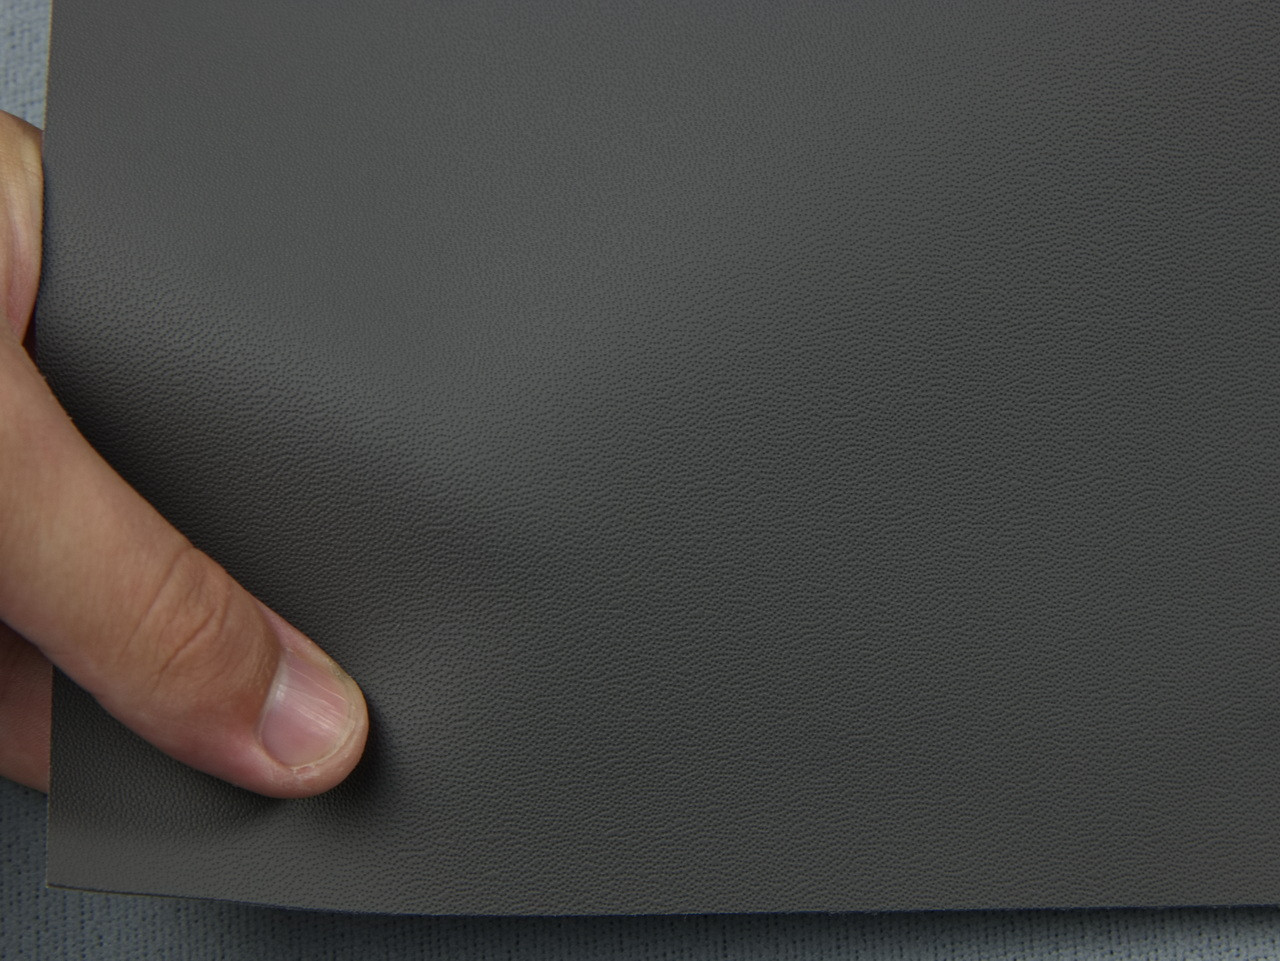 Автомобильный кожзам BENTLEY 1205 серый, на тканевой основе, ширина 140см, Турция детальная фотка